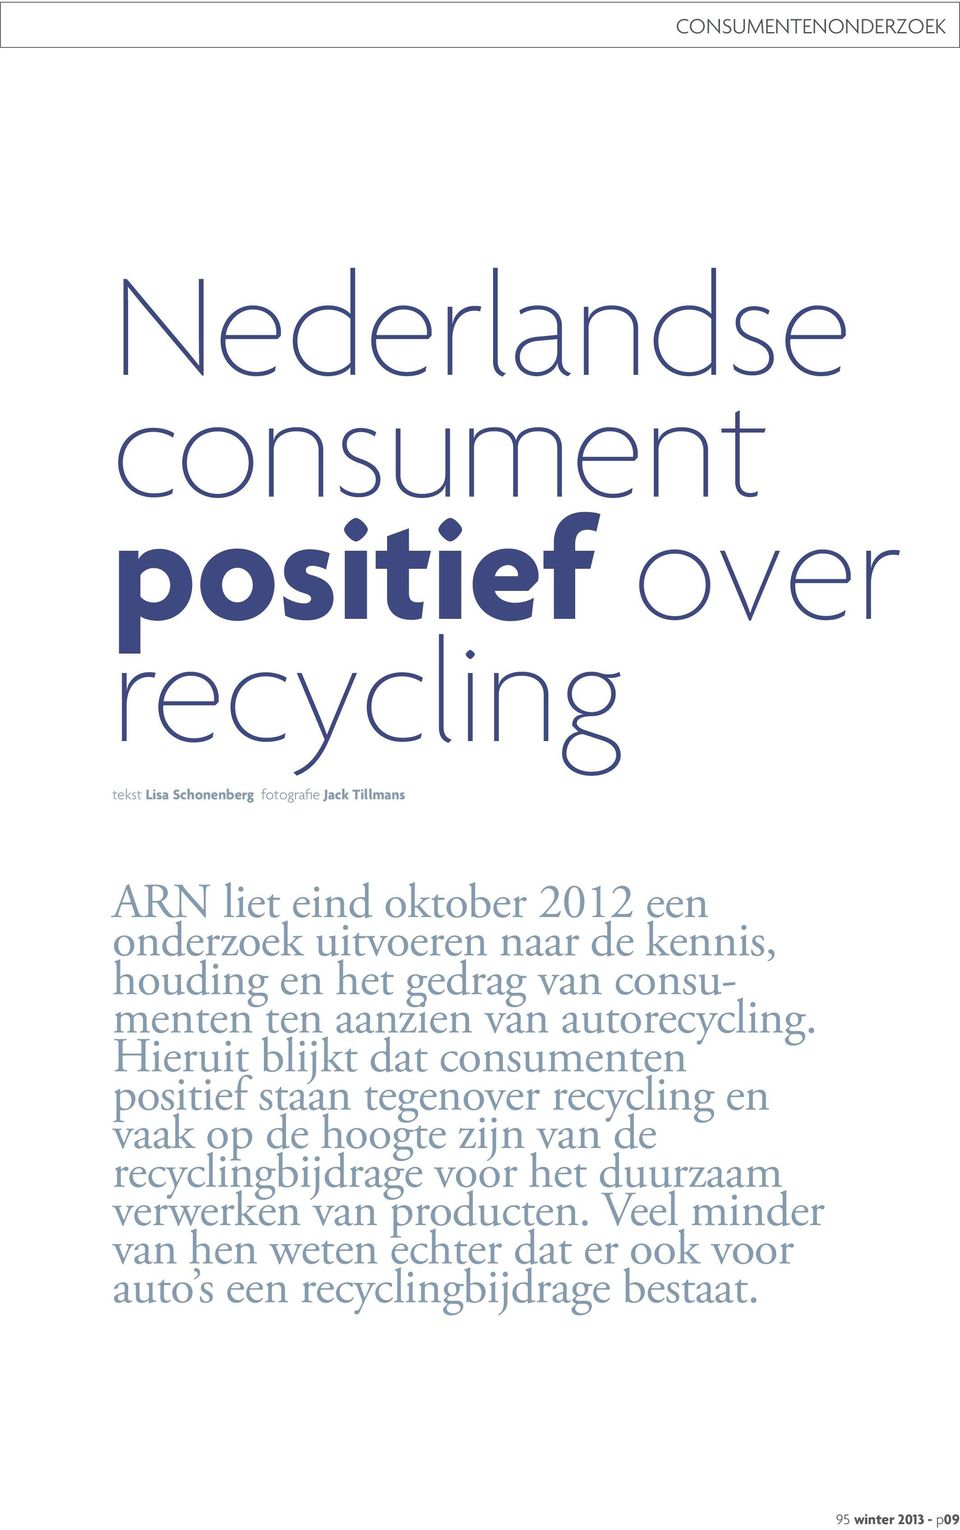 Hieruit blijkt dat consumenten positief staan tegenover recycling en vaak op de hoogte zijn van de recyclingbijdrage voor het